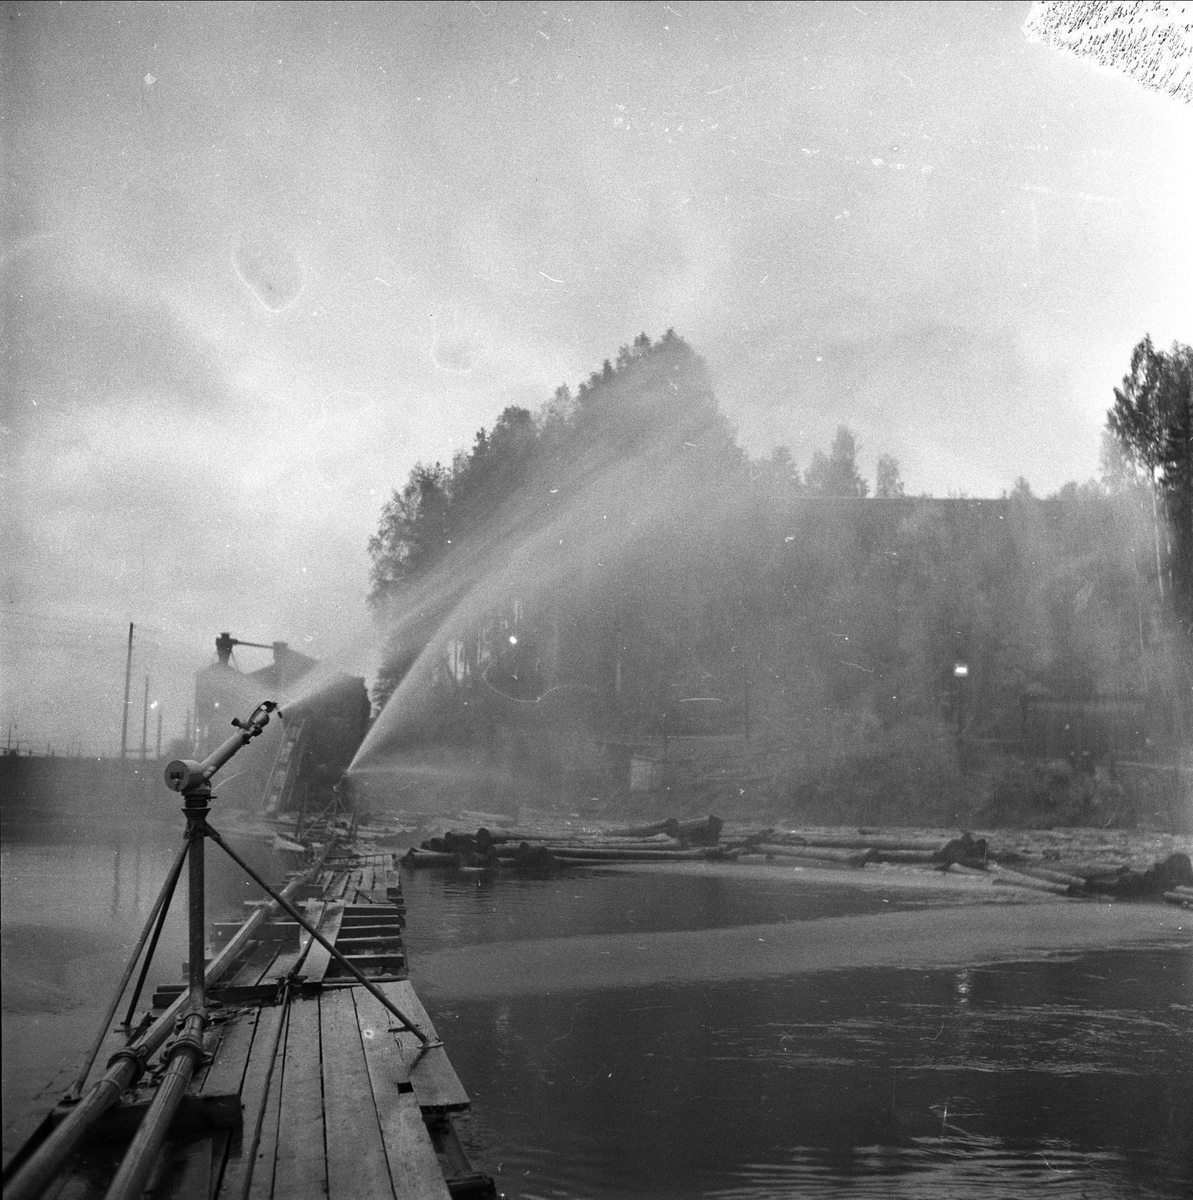 Holmen Brug i Hokksund, Øvre Eiker, Buskerud, 02.10.1958. Vannspredere på elv med tømmer.